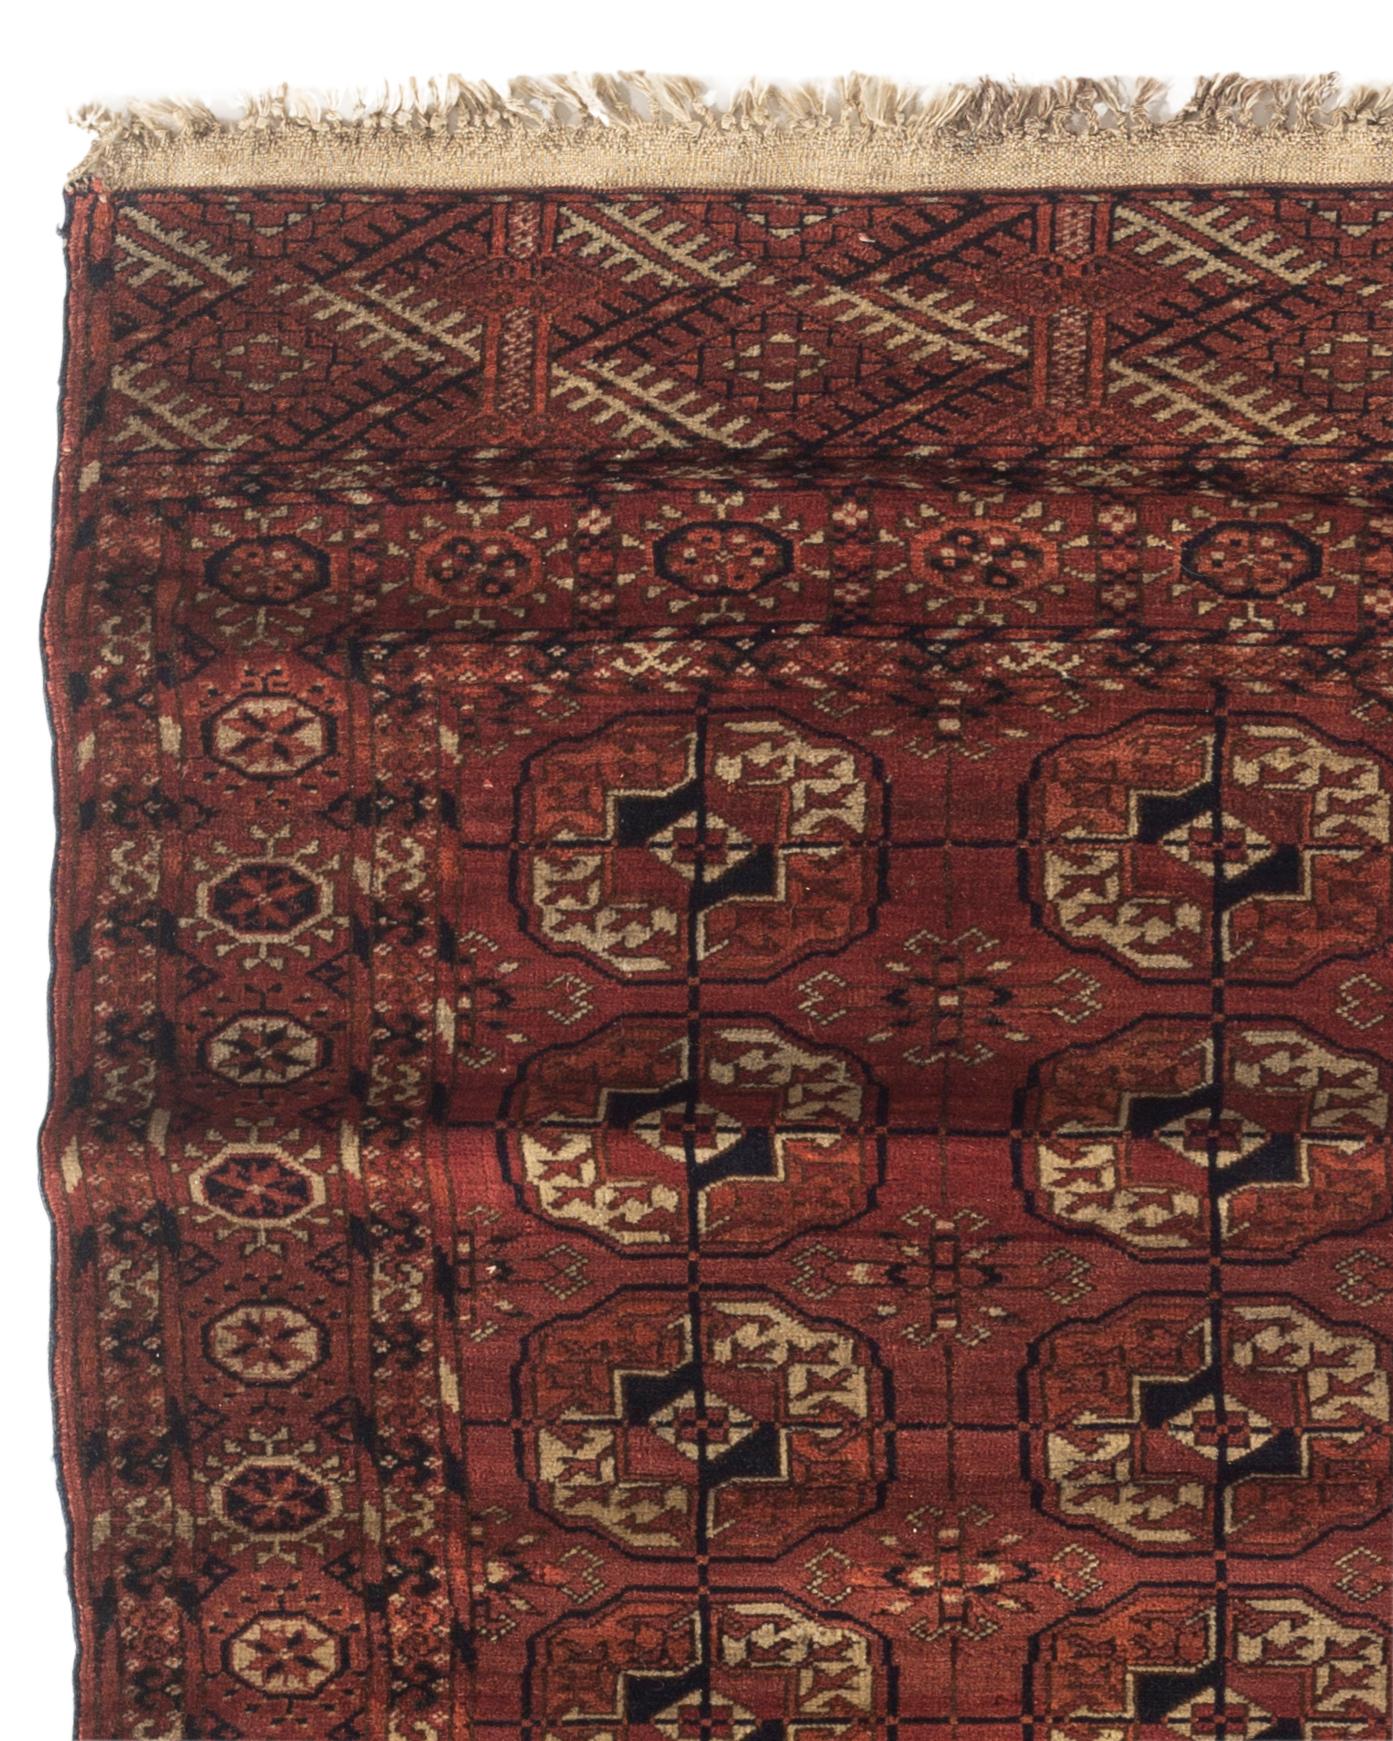 Tapis ancien de Bokhara, vers 1890. Les tapis Bokara ou Bokhara portent le nom de la ville où ils ont été vendus. Ces tapis ont été fabriqués par des tribus Turkomanes, et ce sont ces tisserands qui ont donné au tapis son design distinctif. À la fin